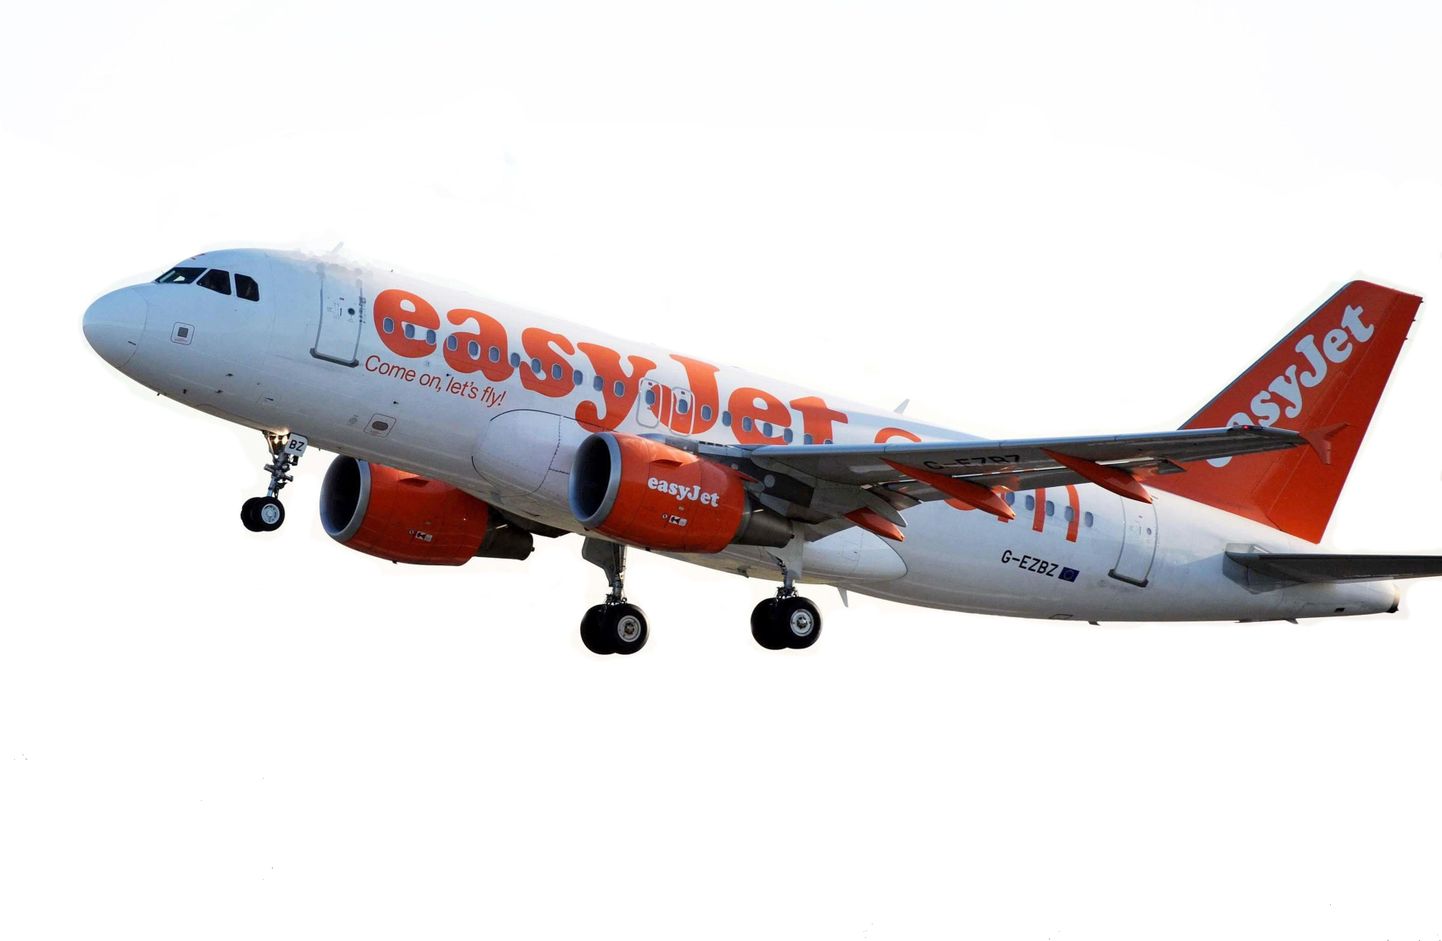 Самолет EasyJet. Иллюстративное фото.